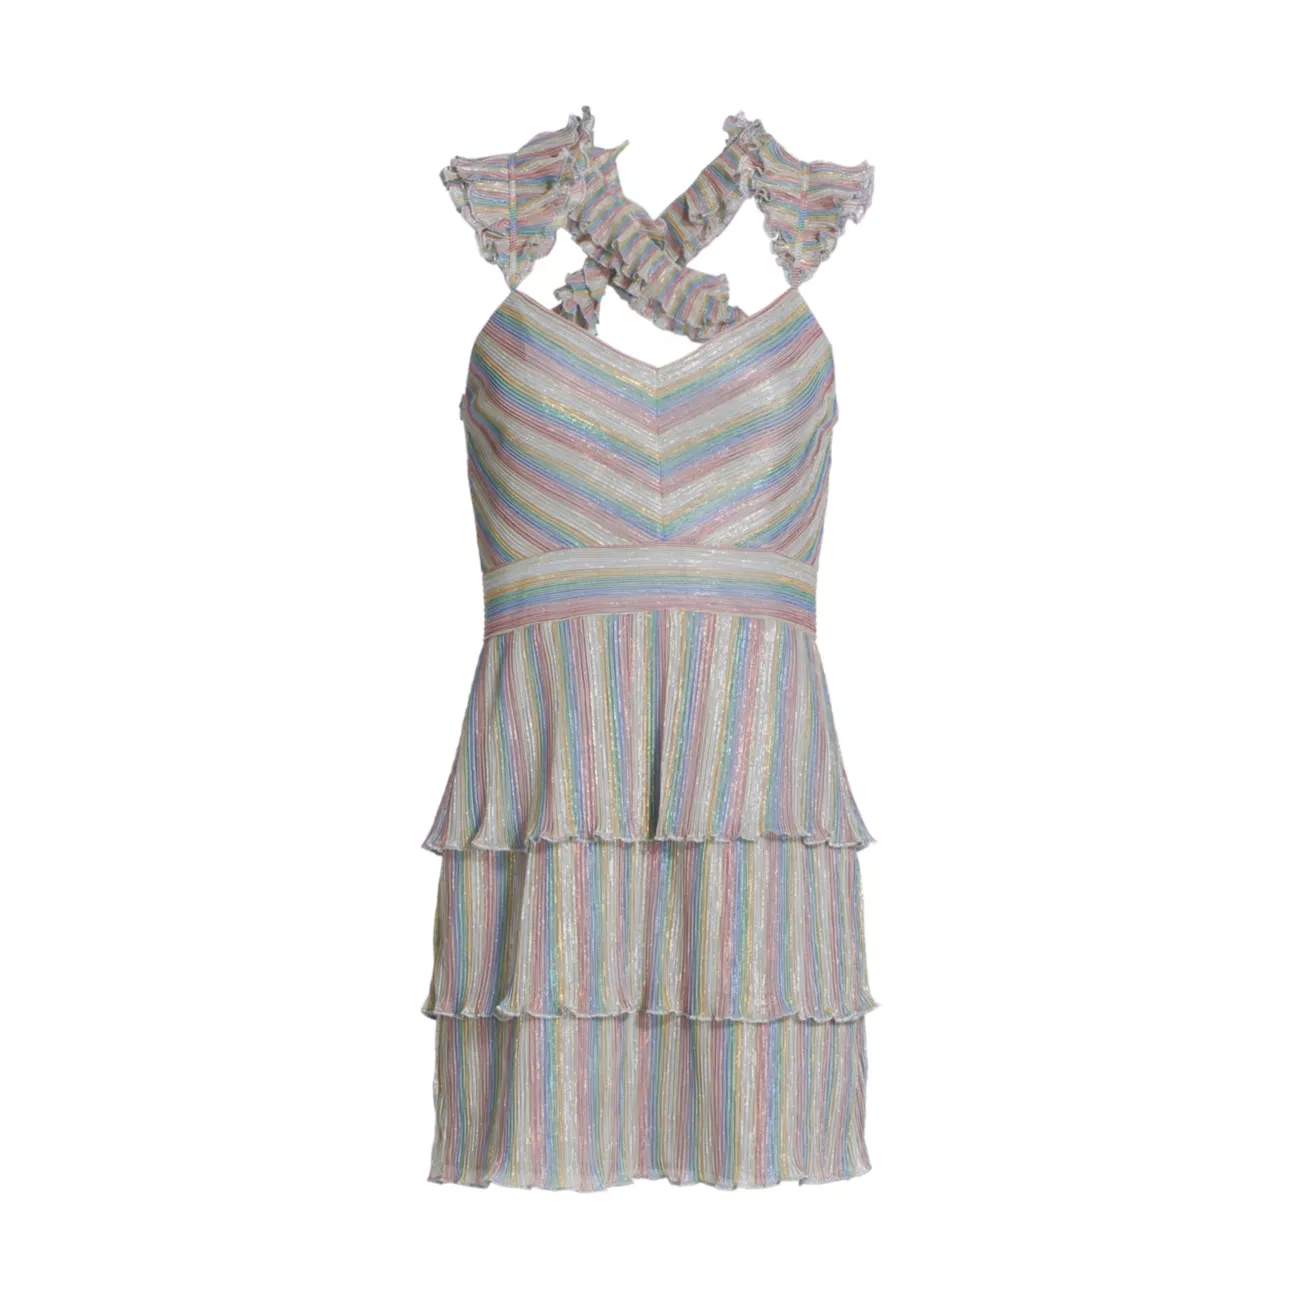 Мини-платье с рюшами и складками в полоску Candy Stripe SAYLOR